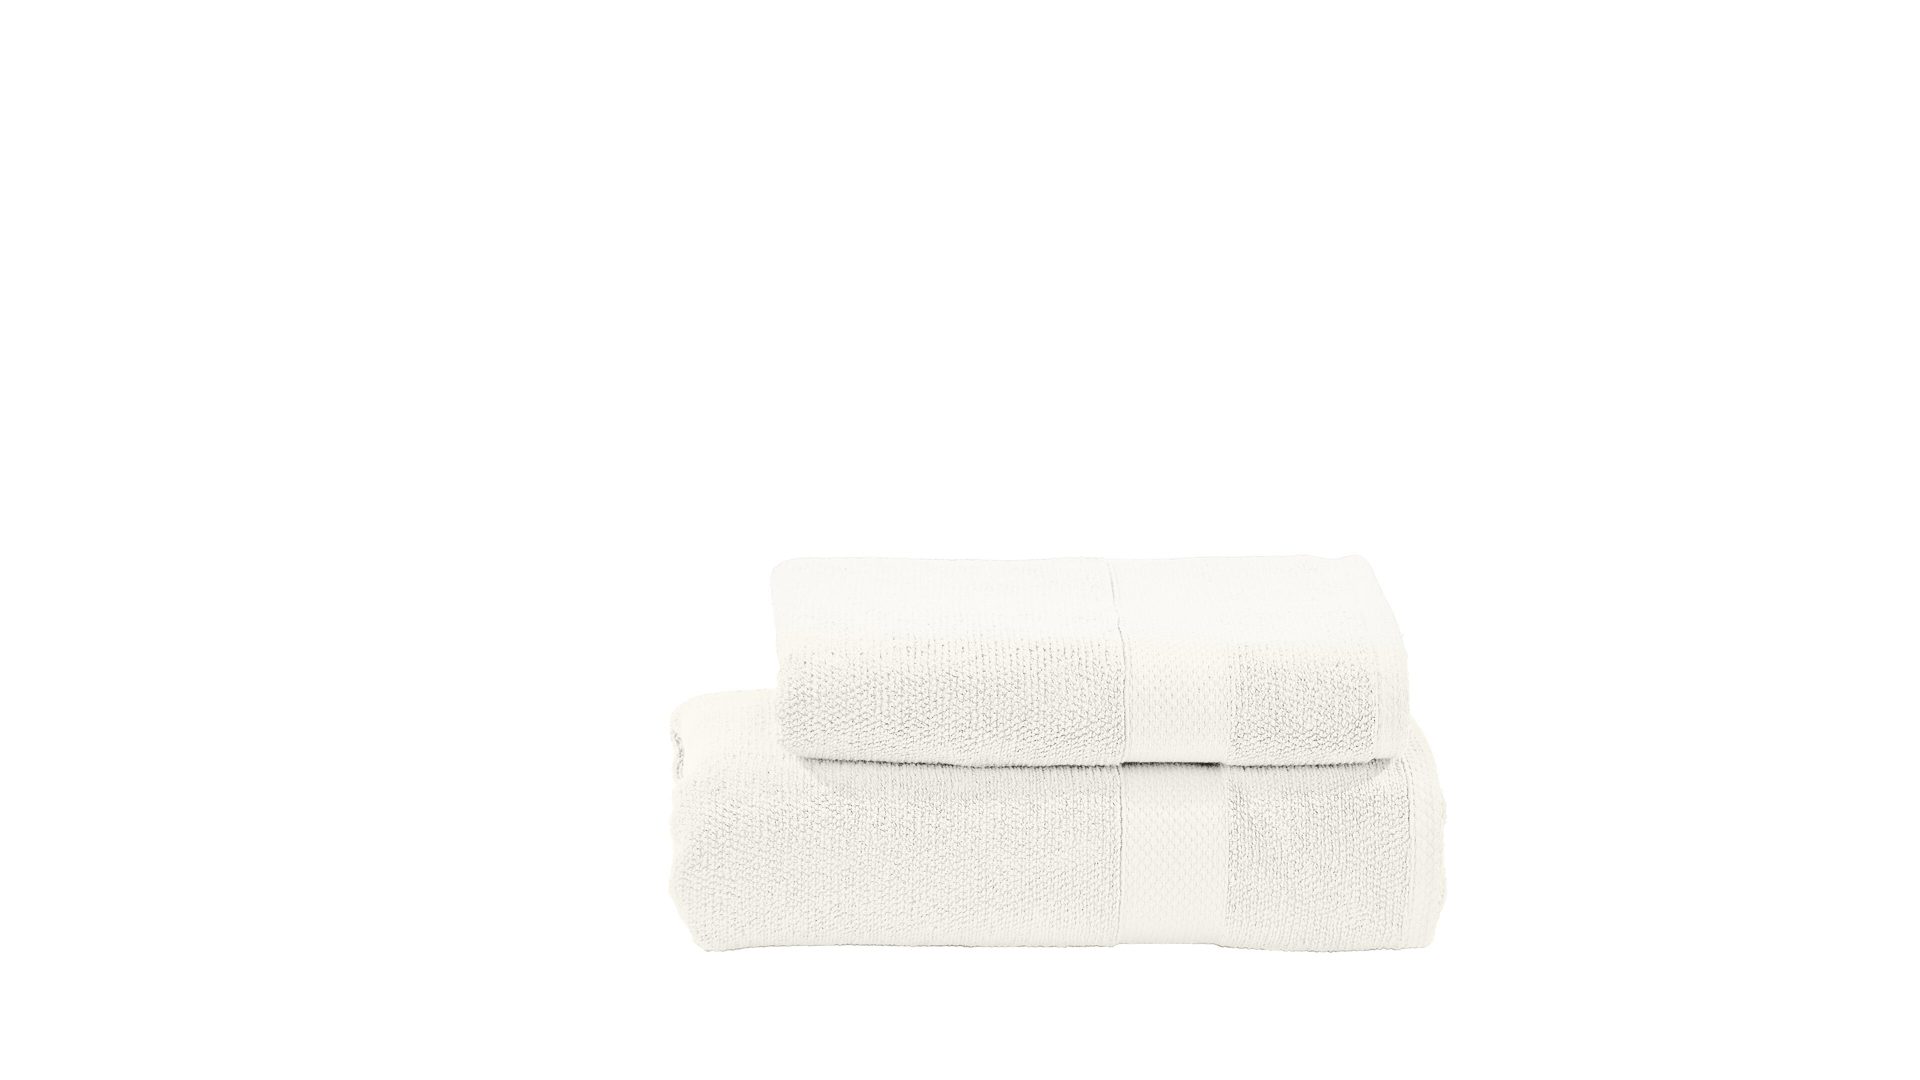 Handtuch-Set Done® by karabel home company aus Stoff in Weiß DONE® Handtuch-Set Deluxe für Ihre Heimtextilien weiße Baumwolle – zweiteilig